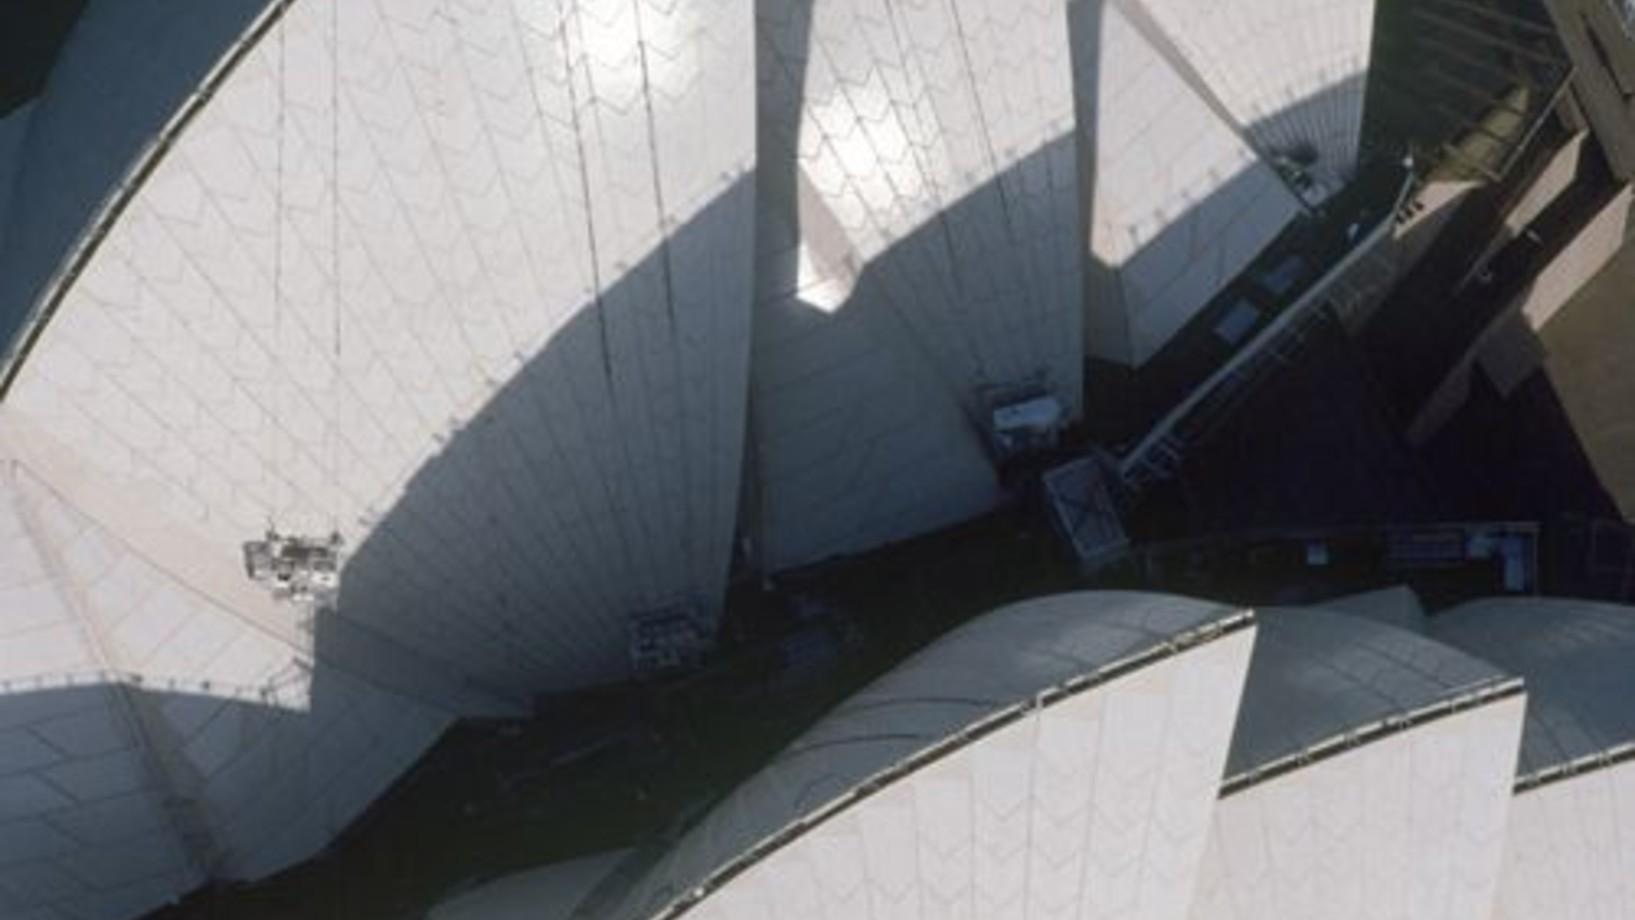 Das Opernhaus der Stadt Sydney
Von neueren Bauwerken beansprucht seit dem Eifelturm wohl keines überzeugender den Rang einer Stadtikone. Stadtikone? Mehr noch, Landesikone: die weissen Segel aus Beton sagen ja heute ebenso lockend „Australien“ wie der rote Inselberg Uluru. Der dänische Architekt Jørn Utzon hatte 1957 den Wettbewerb für das Opernhaus mit einer blossen Skizze gewonnen; deren Verwirklichung ab 1959 stand aber von Anfang an unter keinem guten Stern.

Utzon wurde dazu gedrängt, mit den Bauar…